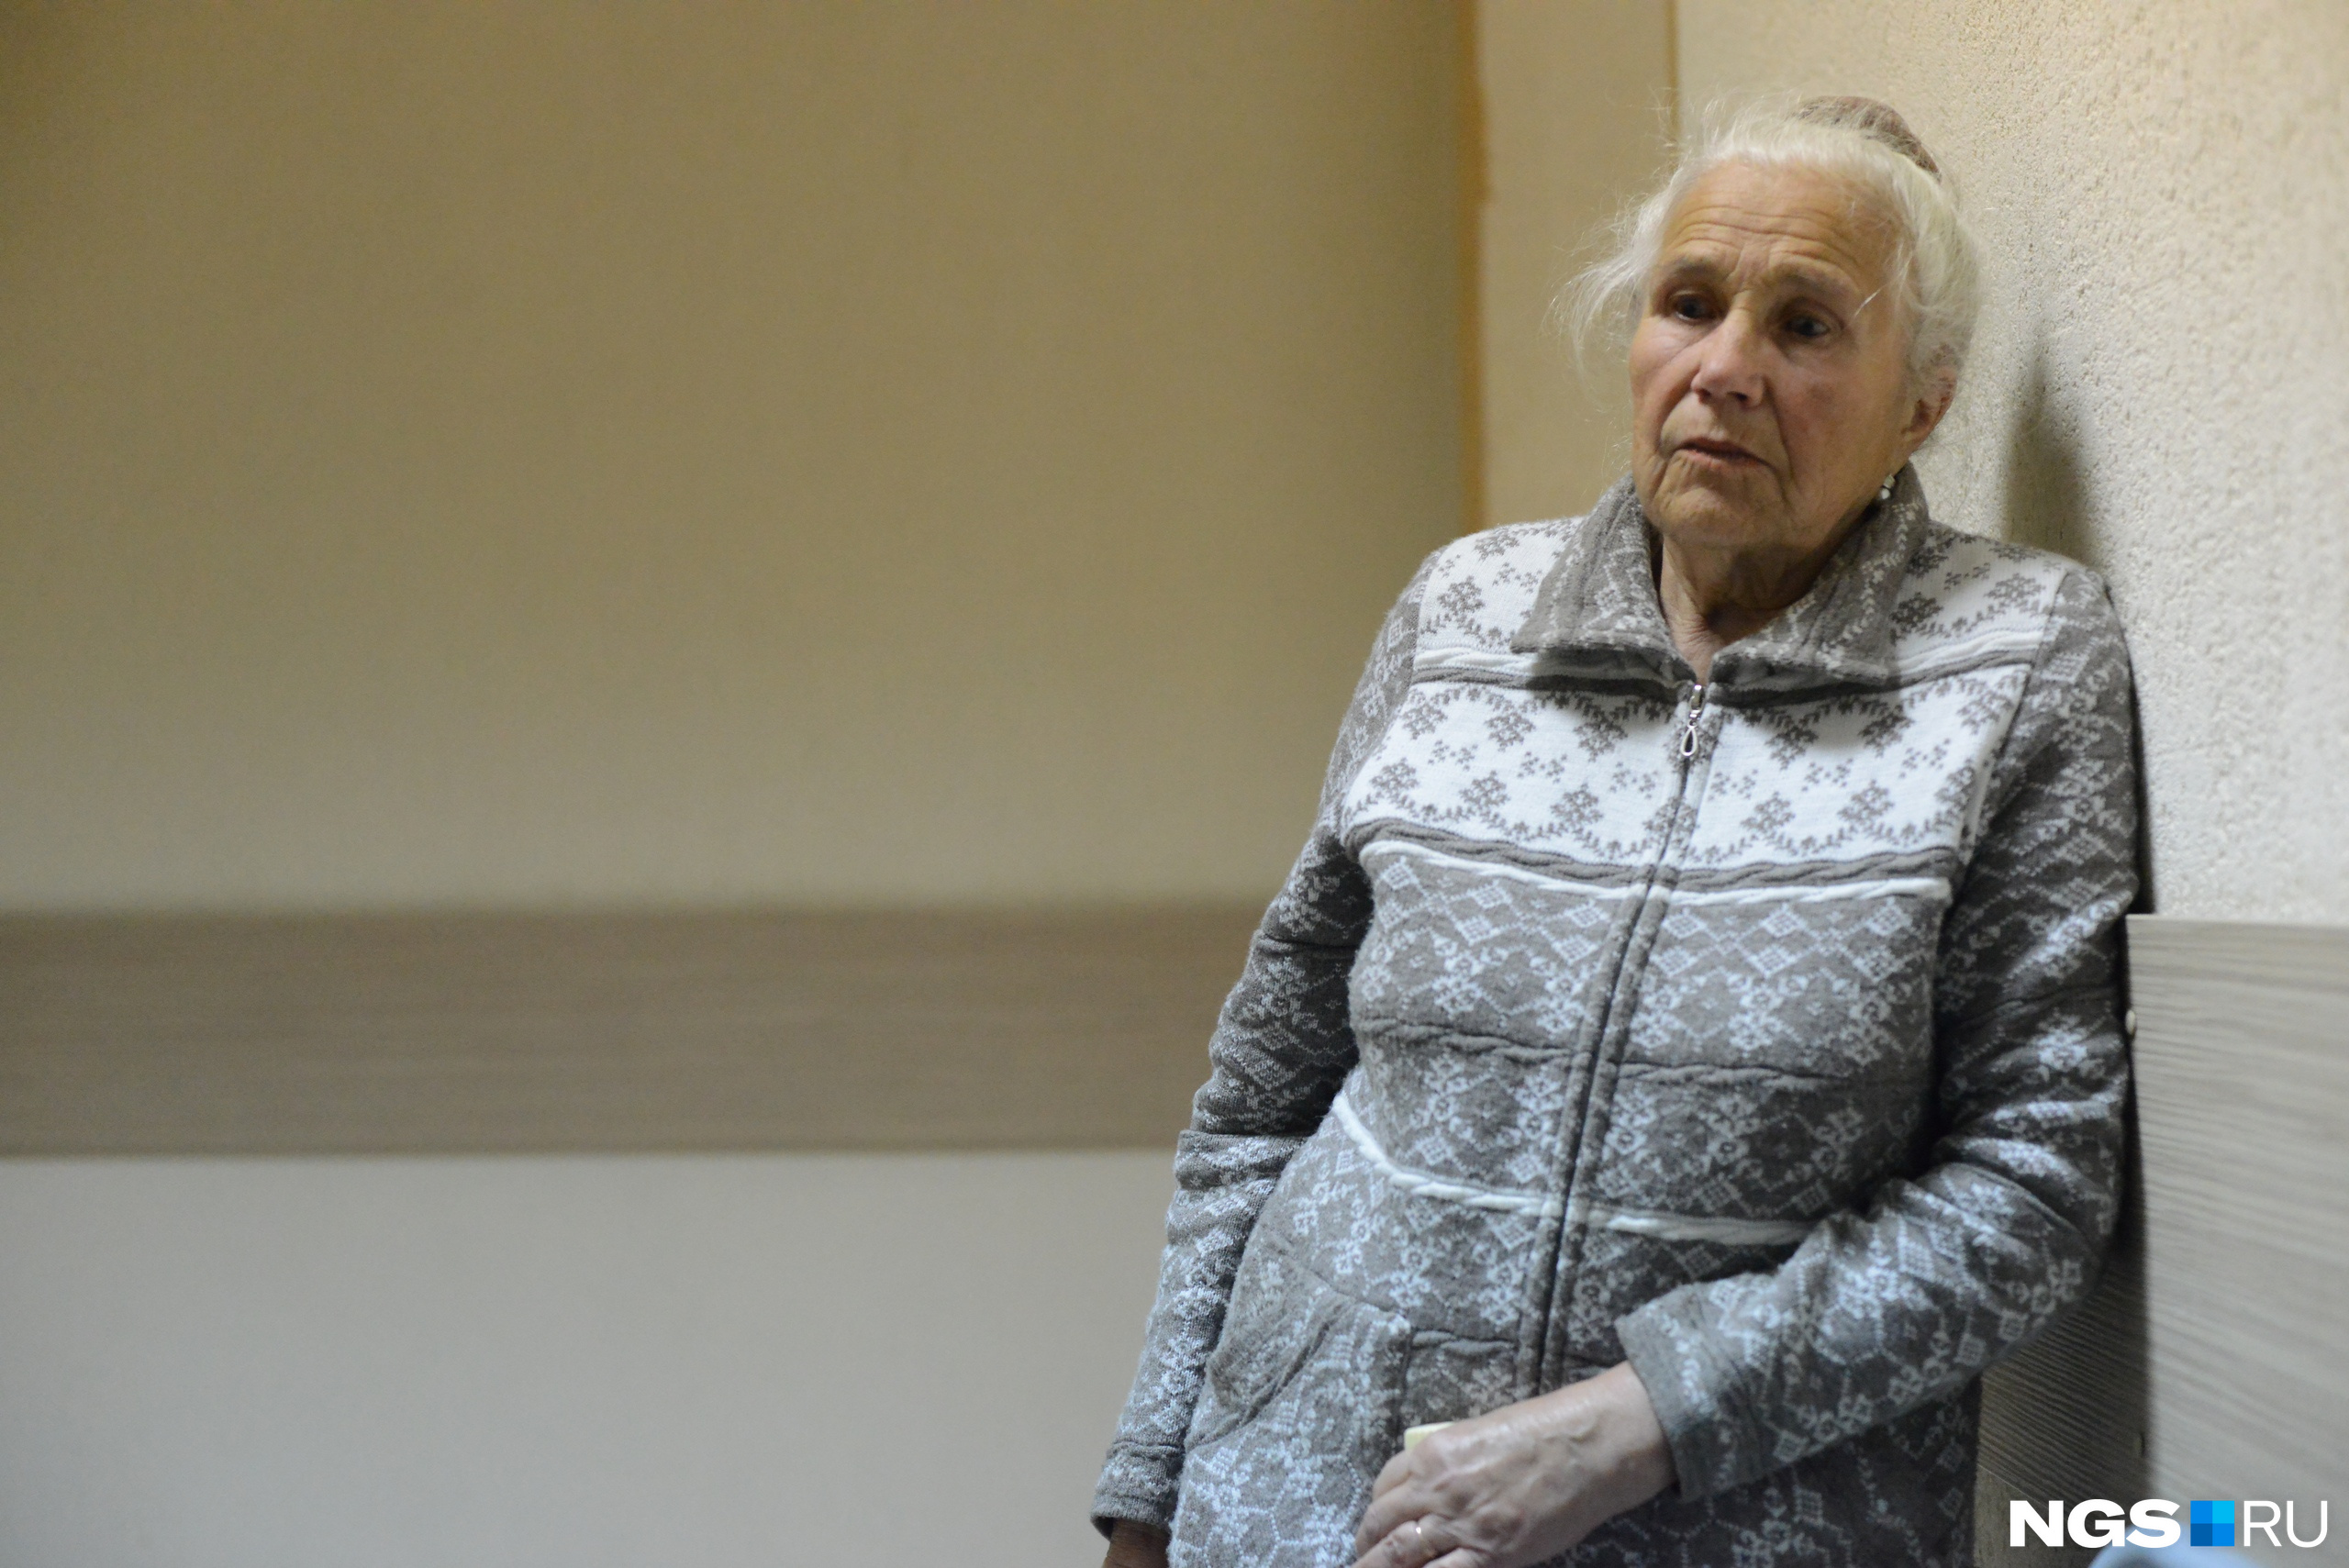 Бабушка Кристины Приходько с горечью вспоминает заботу, с которой к ней относилась внучка